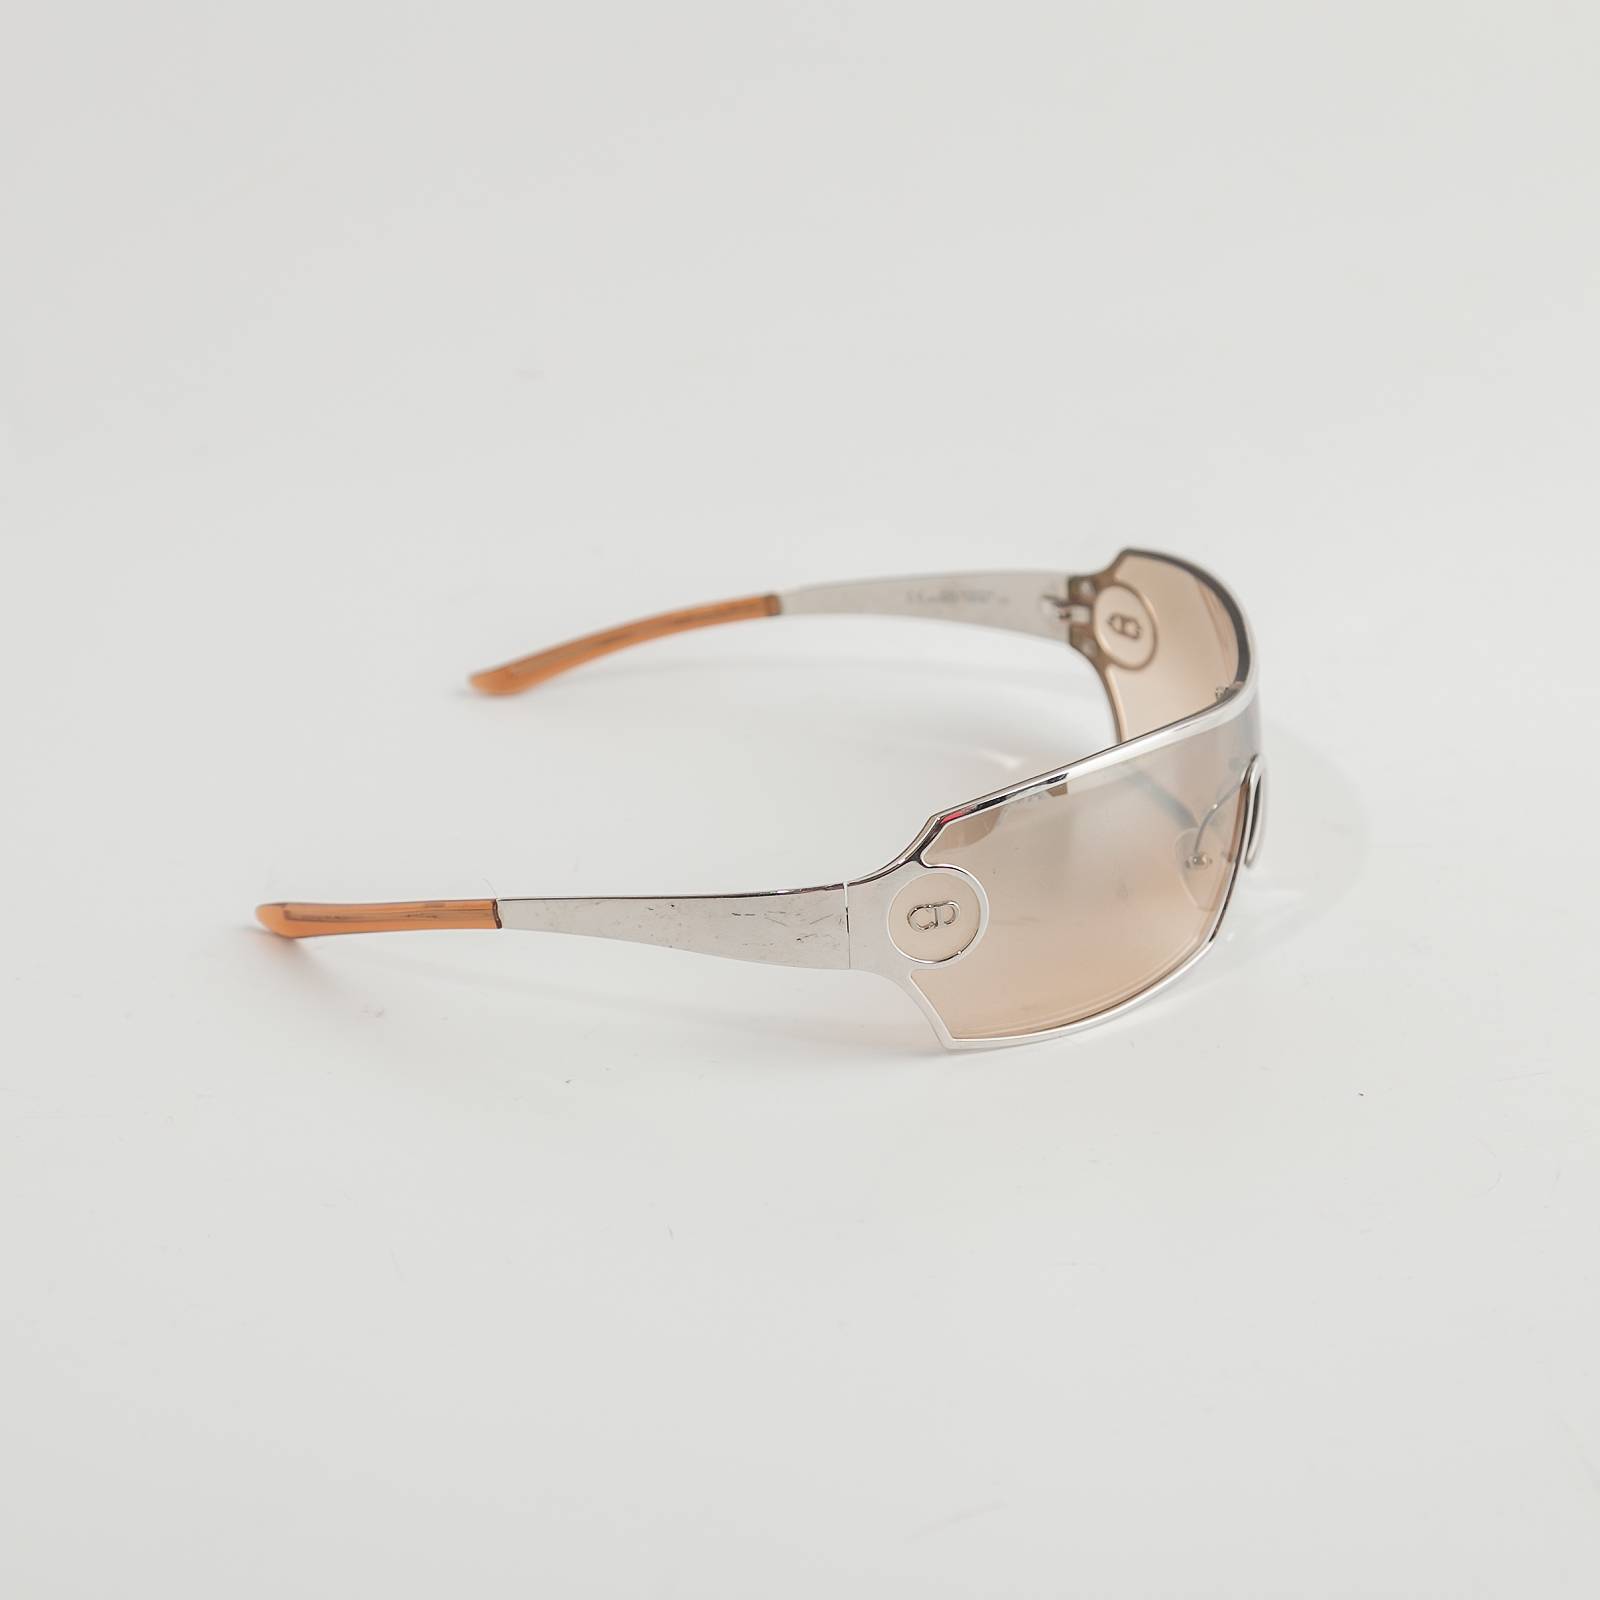 Солнцезащитные очки DIOR DIORADDICT1 RHL  купить со скидкой 50 в  СанктПетербурге  цена характеристики фото